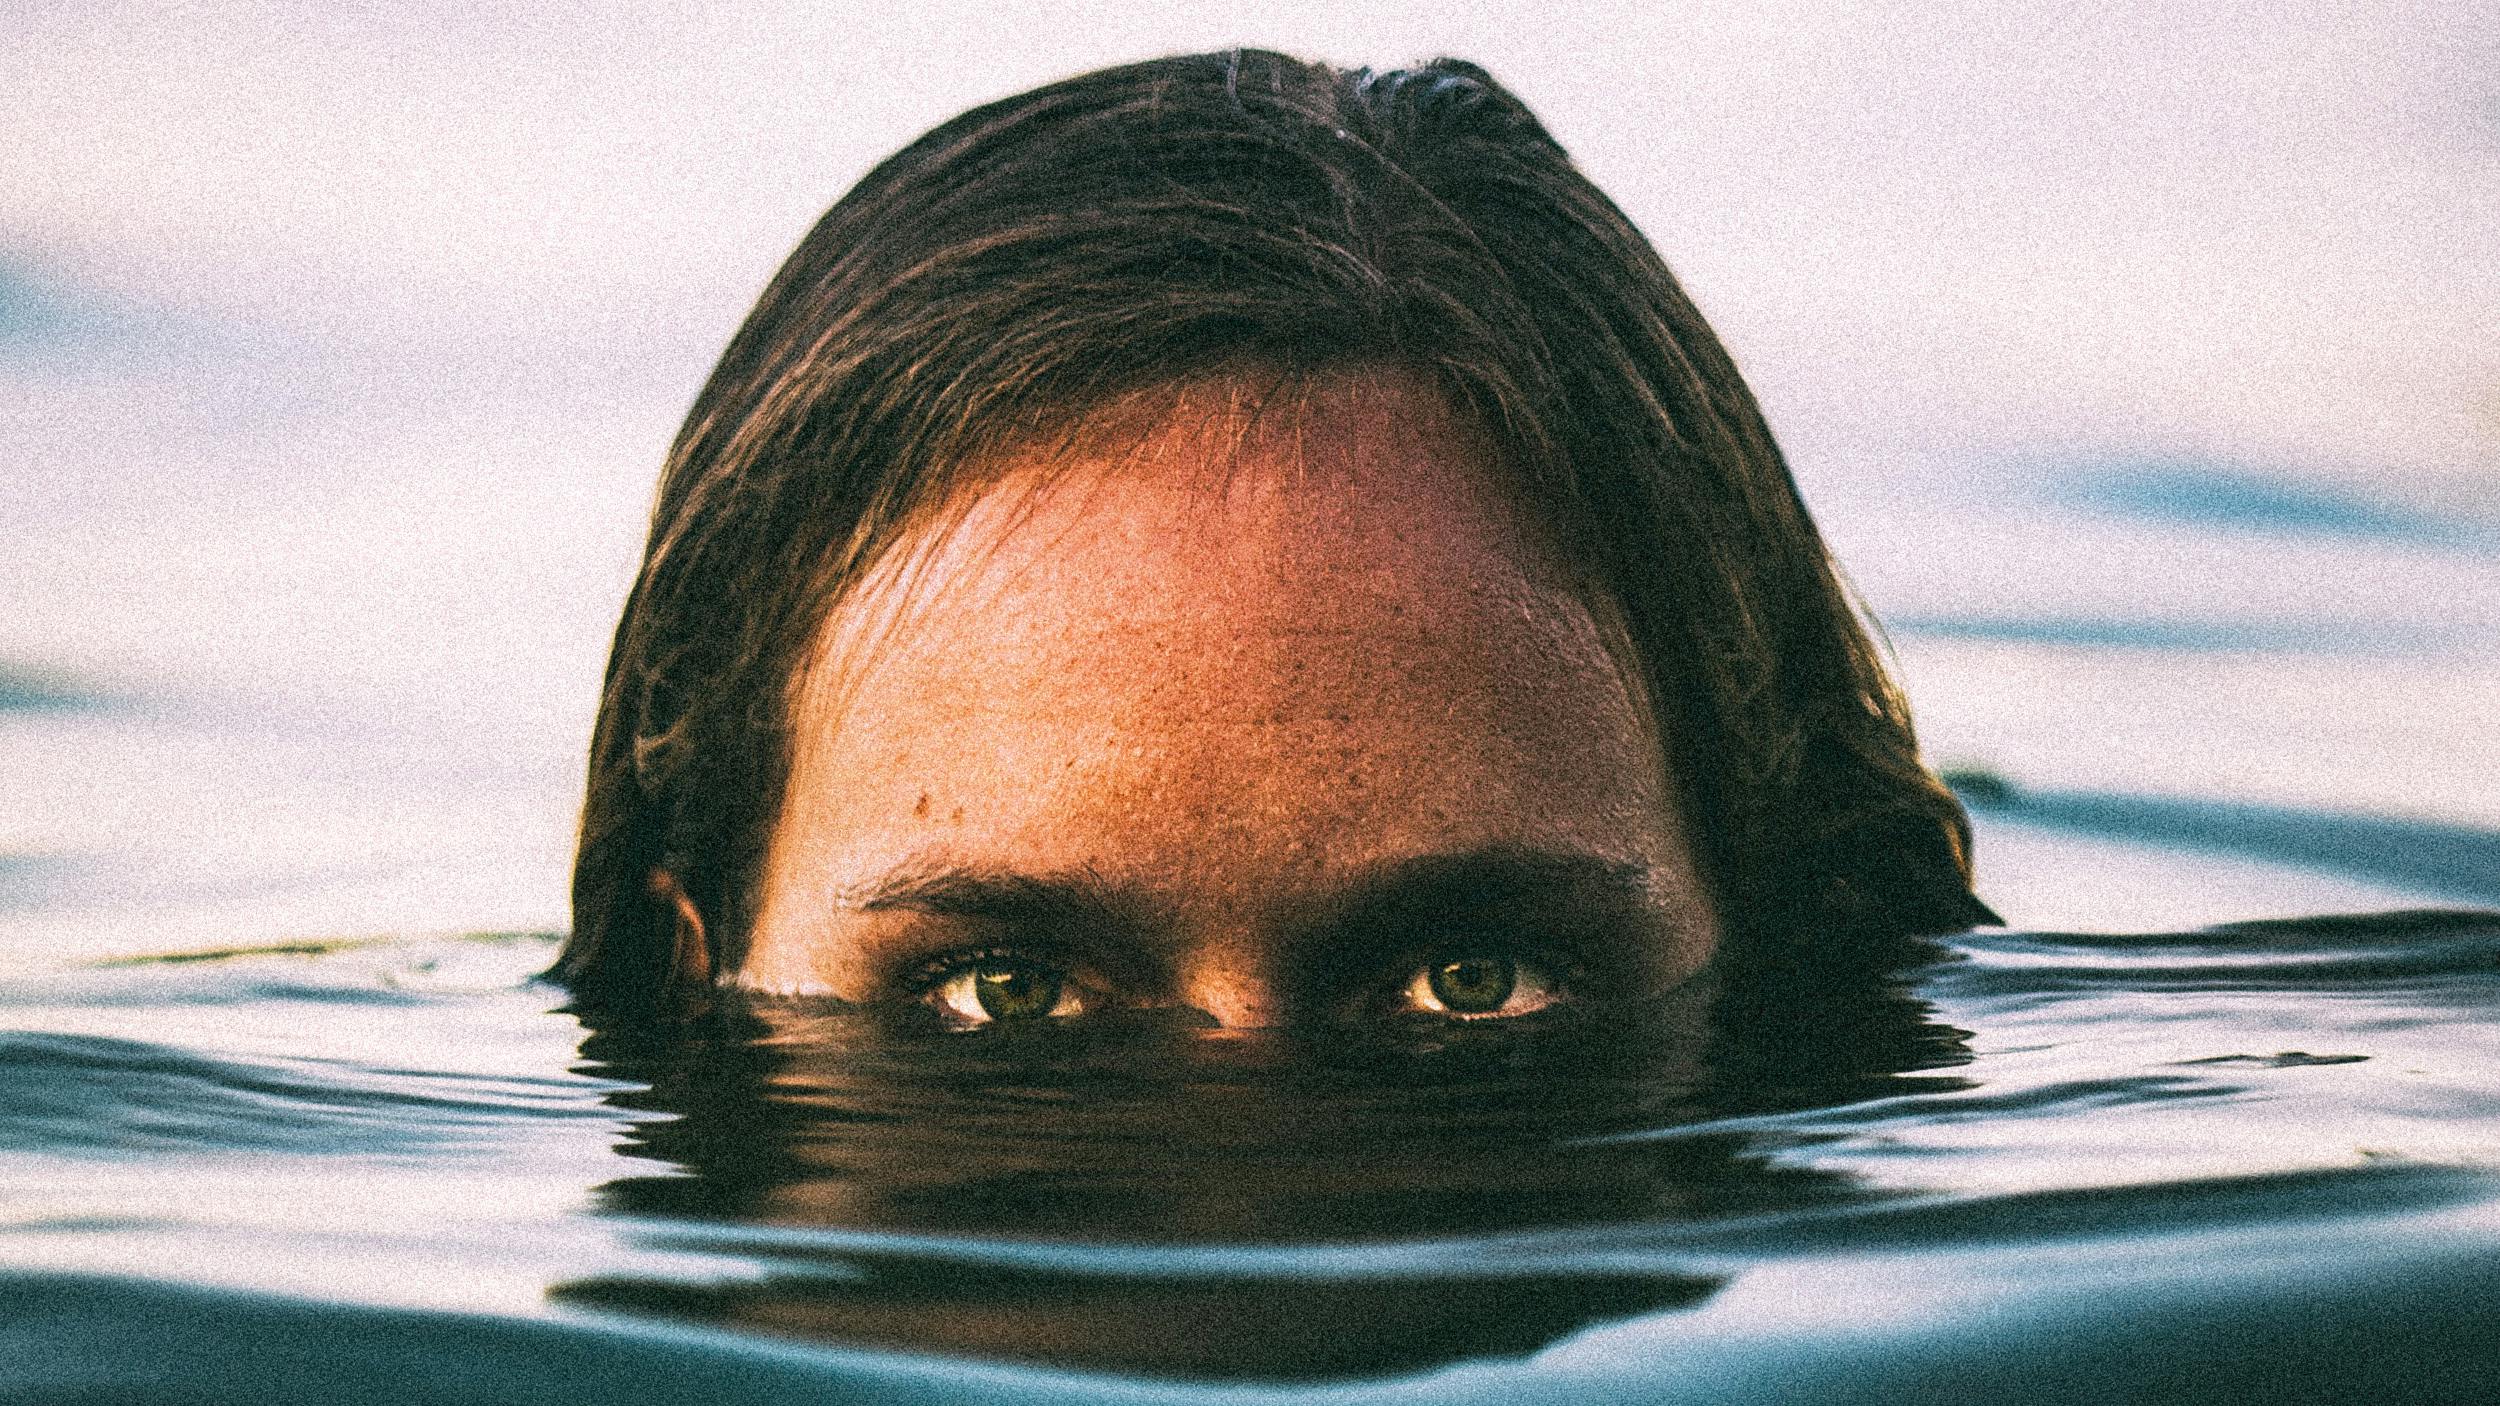 Man sieht einen Mann, wie er seien Kopf aus dem Wasser streckt und einen direkt anschaut. Sein Kopf guckt nur halb aus dem Wasser raus.